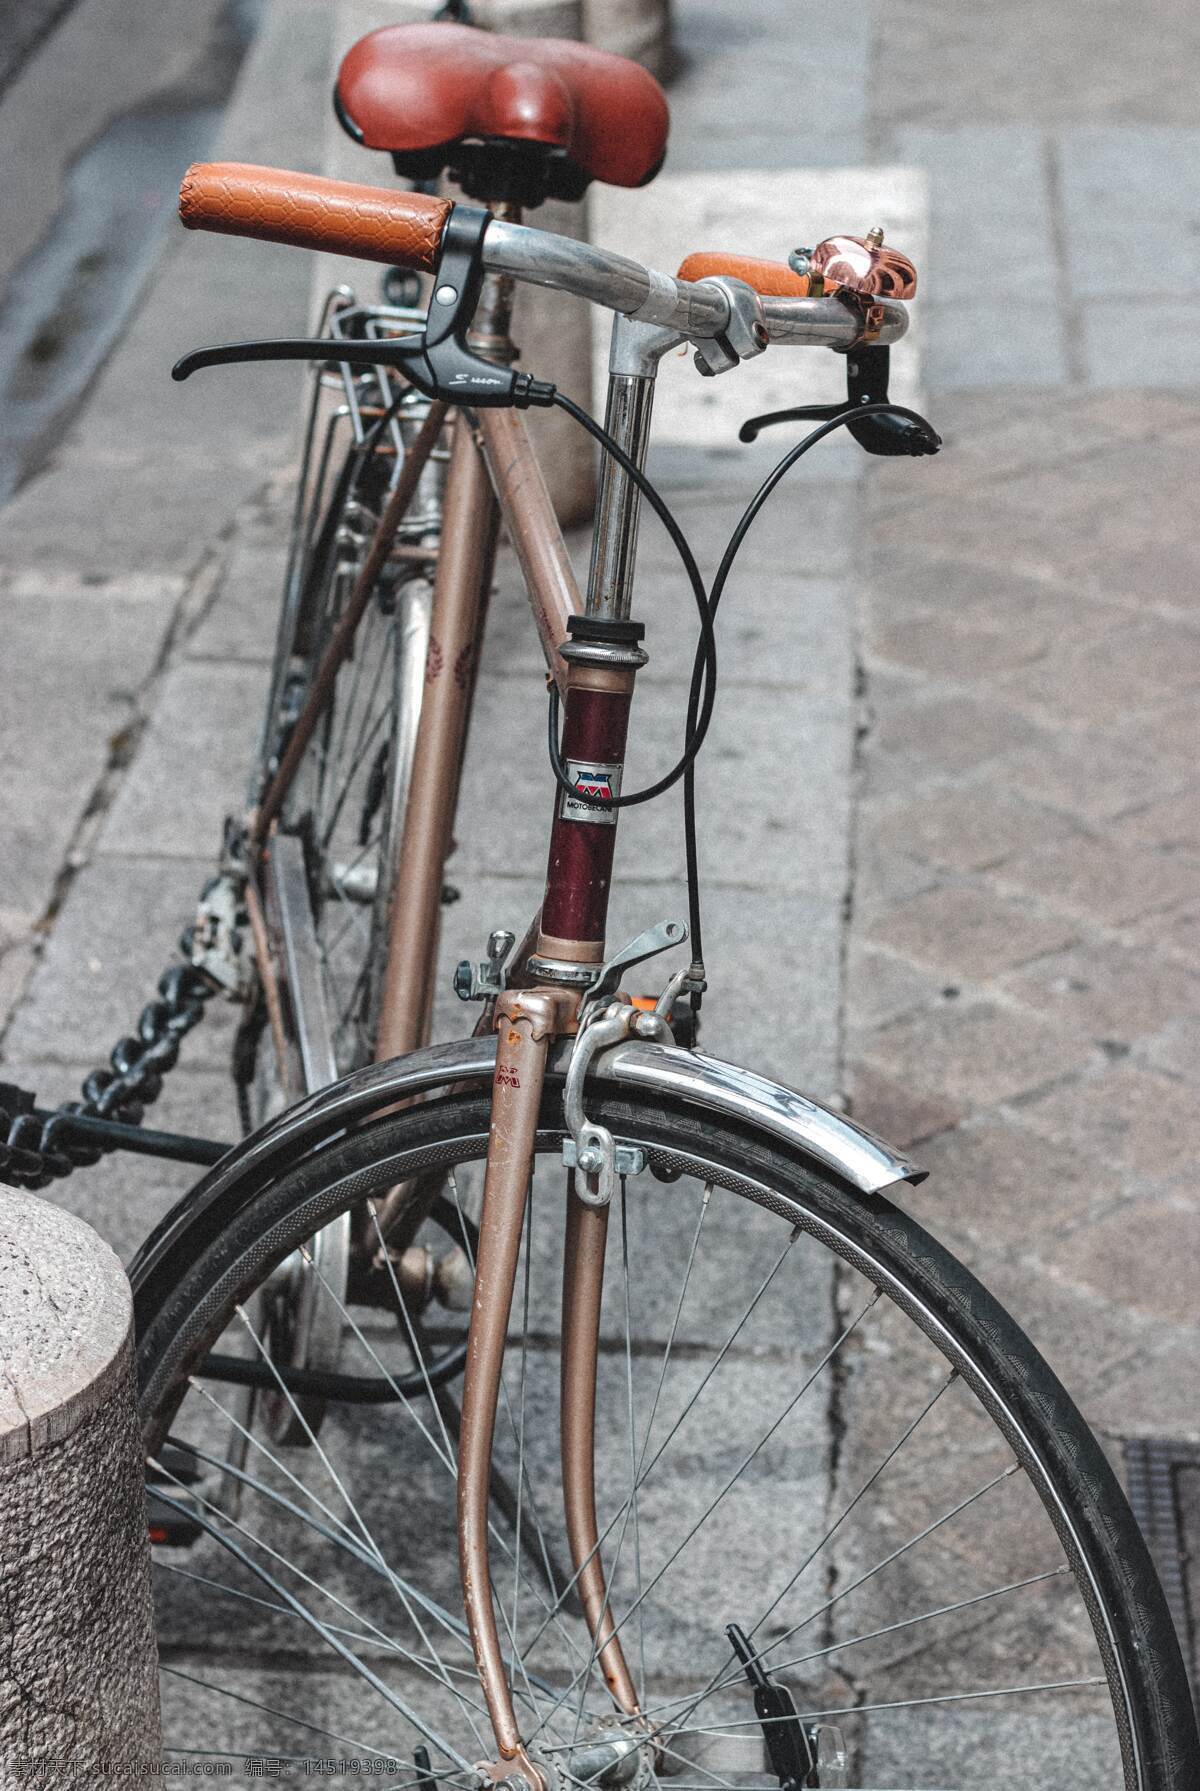 自行车 脚踏车 轮胎 轮毂 轮圈 把手 共享 单车 休闲 旅行 锻炼 生活用品 现代科技 交通工具